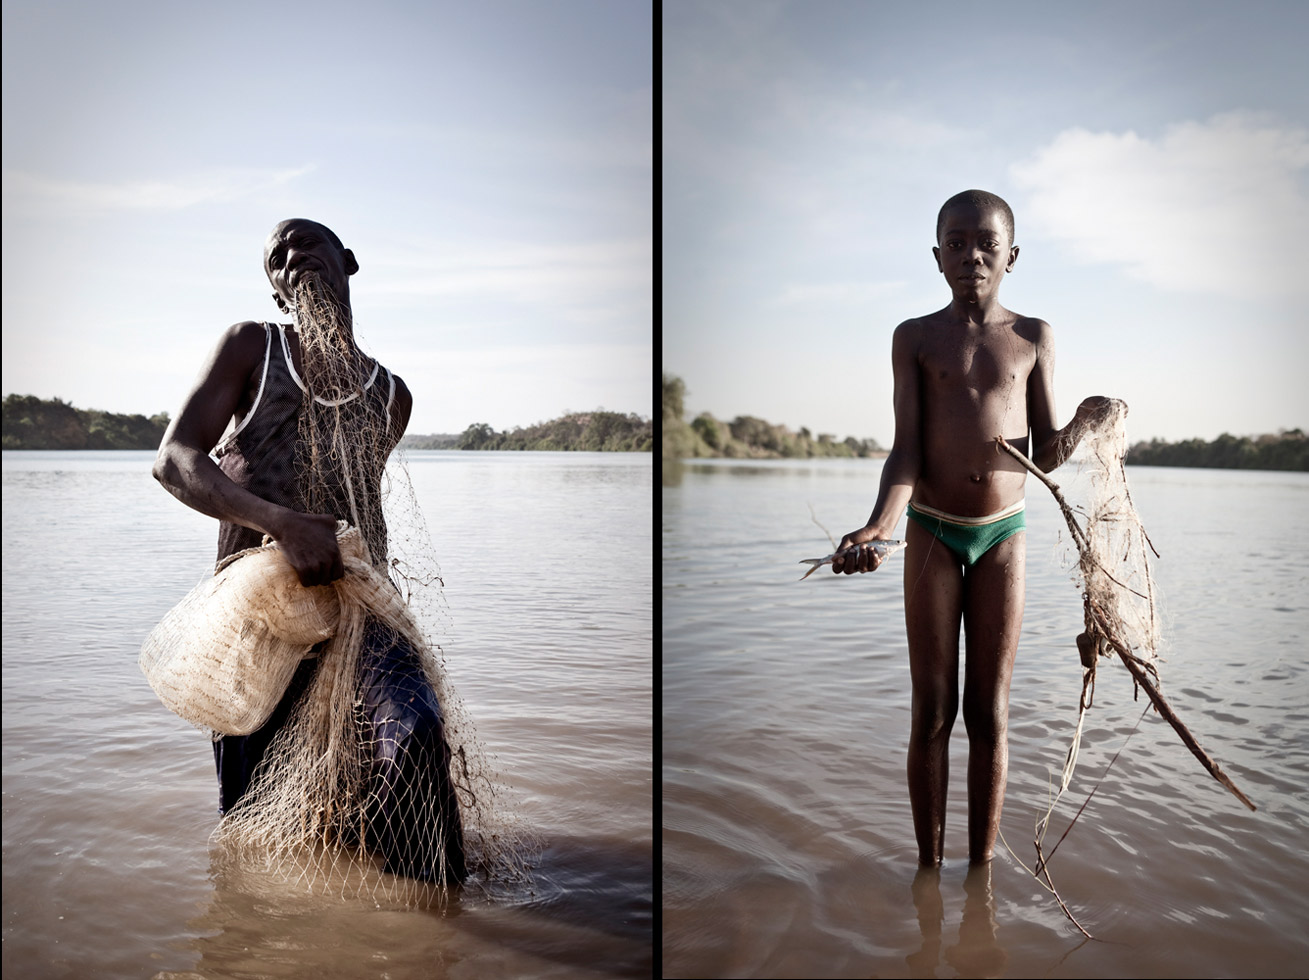 L: Alkalo of Karantaba preparing his fishing net.

R: A young boy at Karantaba.